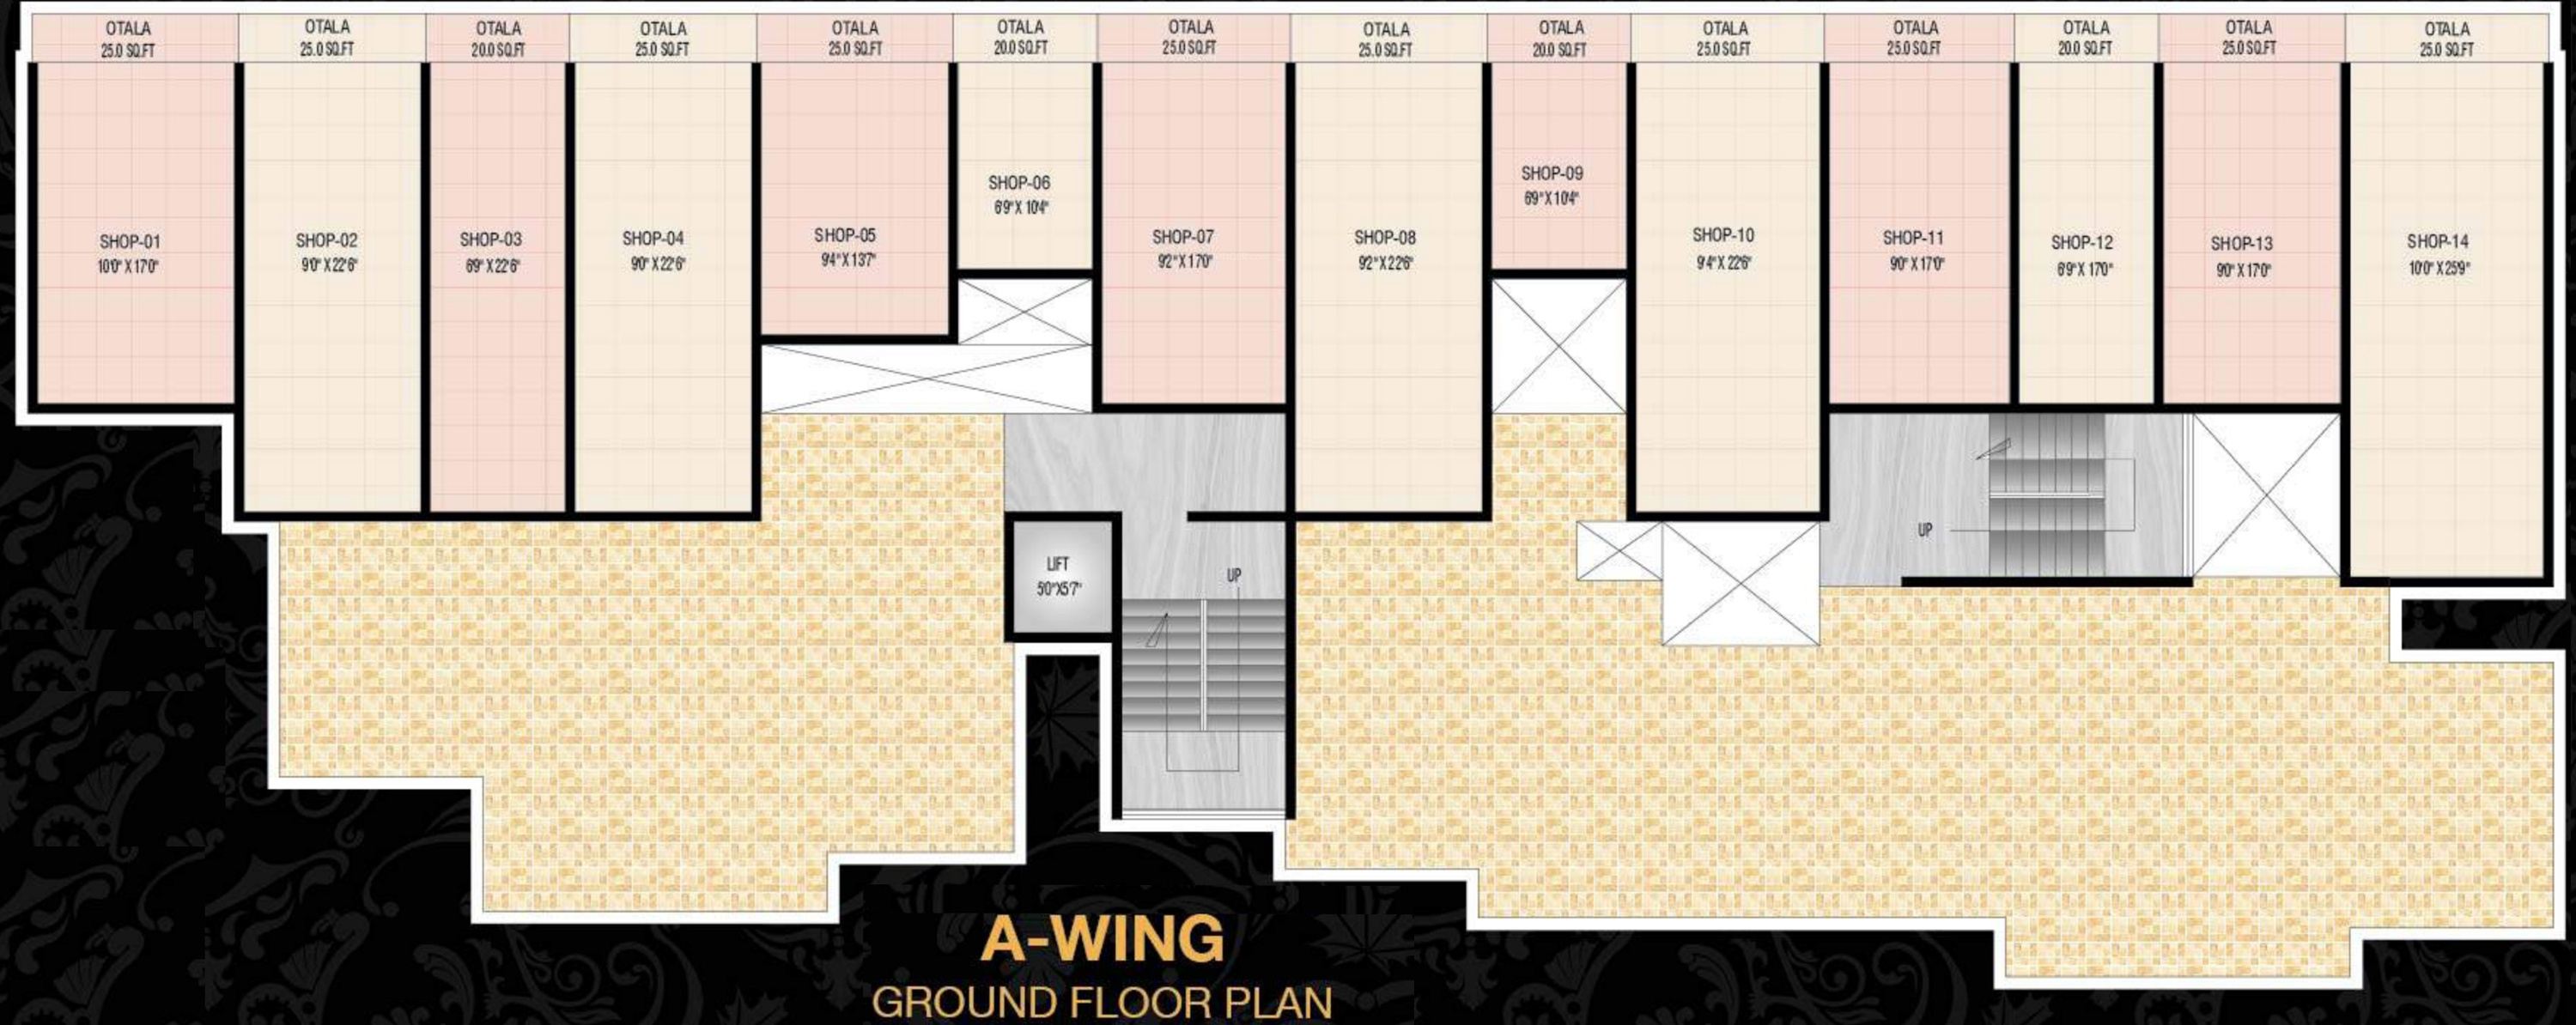 100 450 Square Foot Apartment Floor Plan Home Design 500 Sq